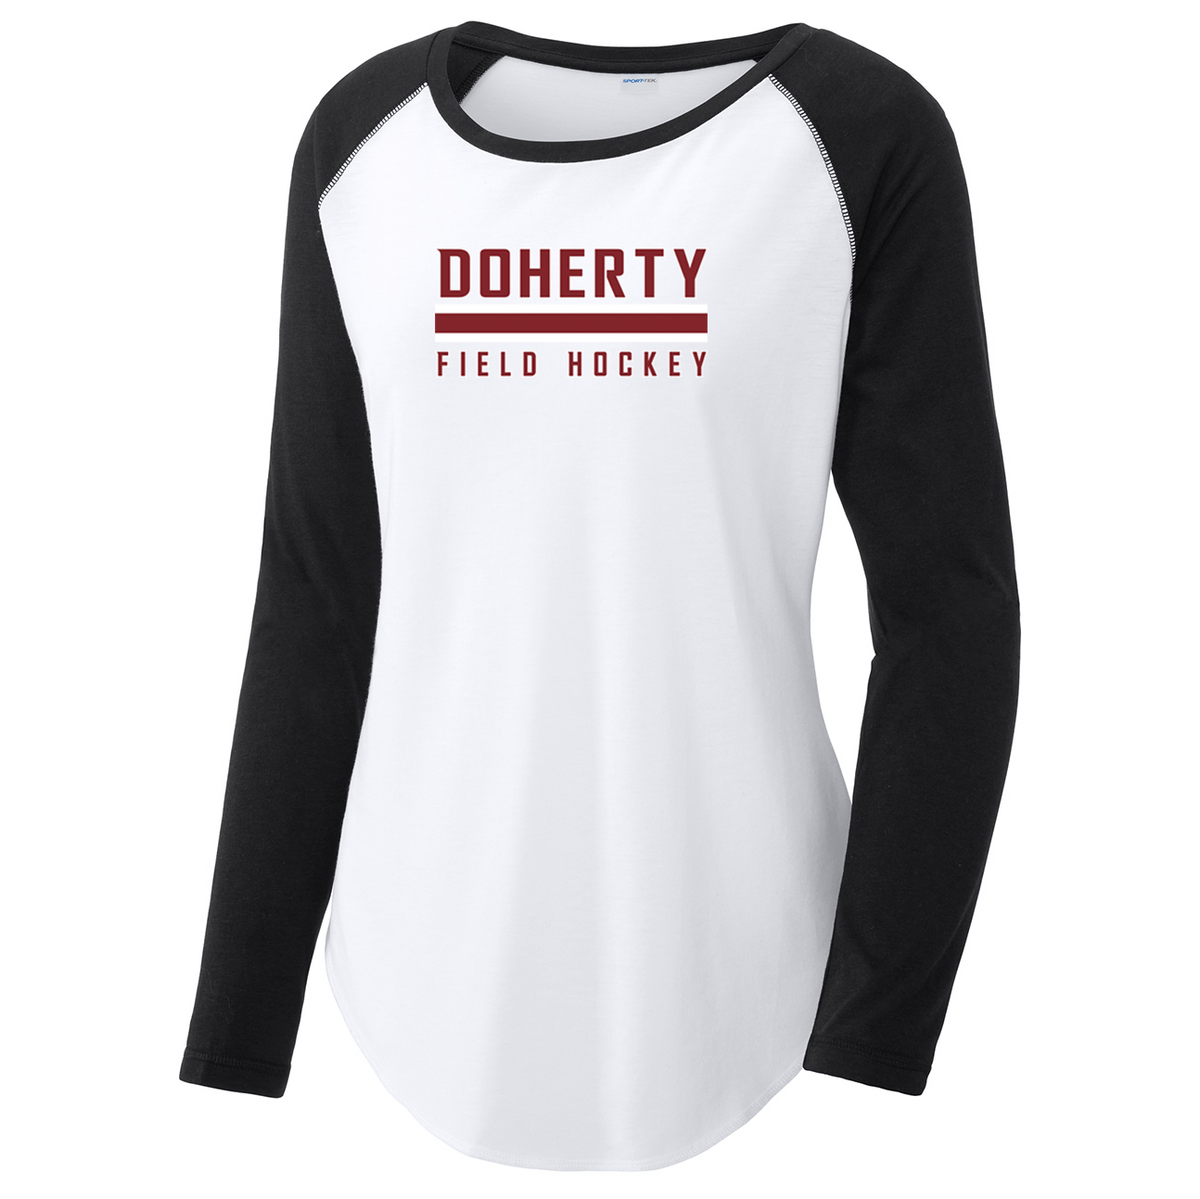 Doherty Field Hockey Women's Raglan Long Sleeve CottonTouch